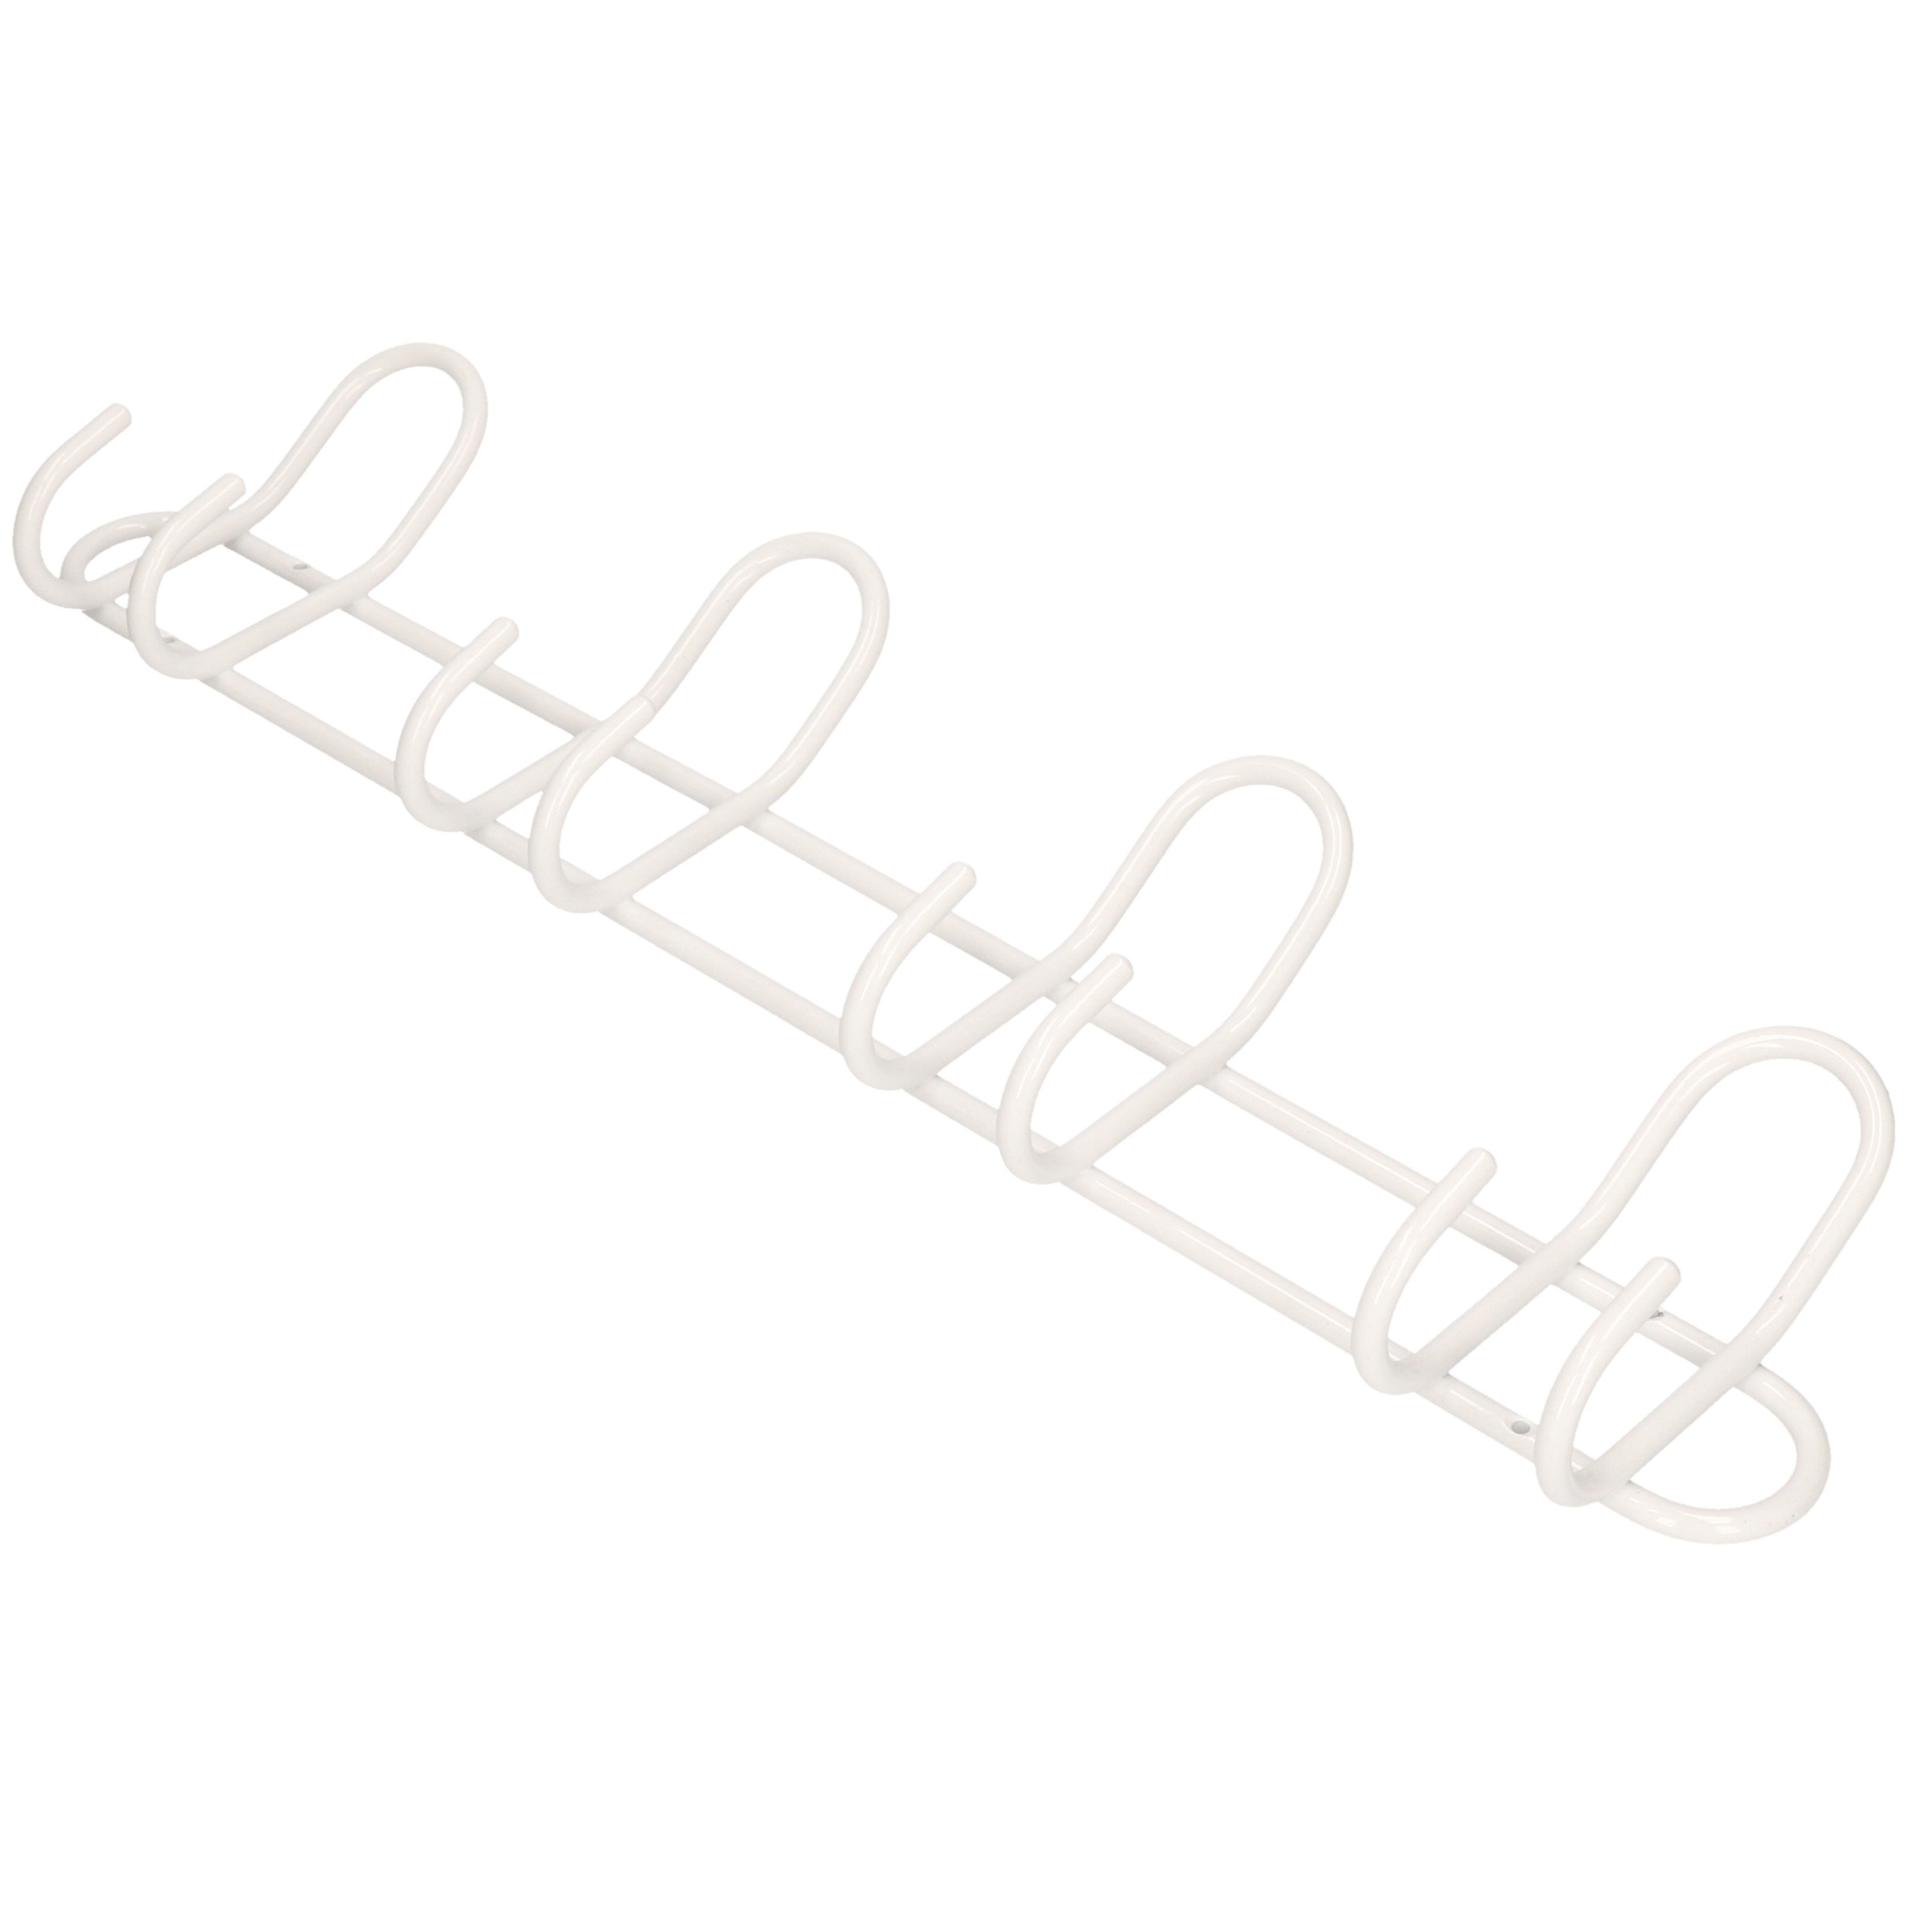 1x Luxe kapstokken-jashaken-wandstokken wit aluminium 4x dubbele haak 14,5 x 53 cm